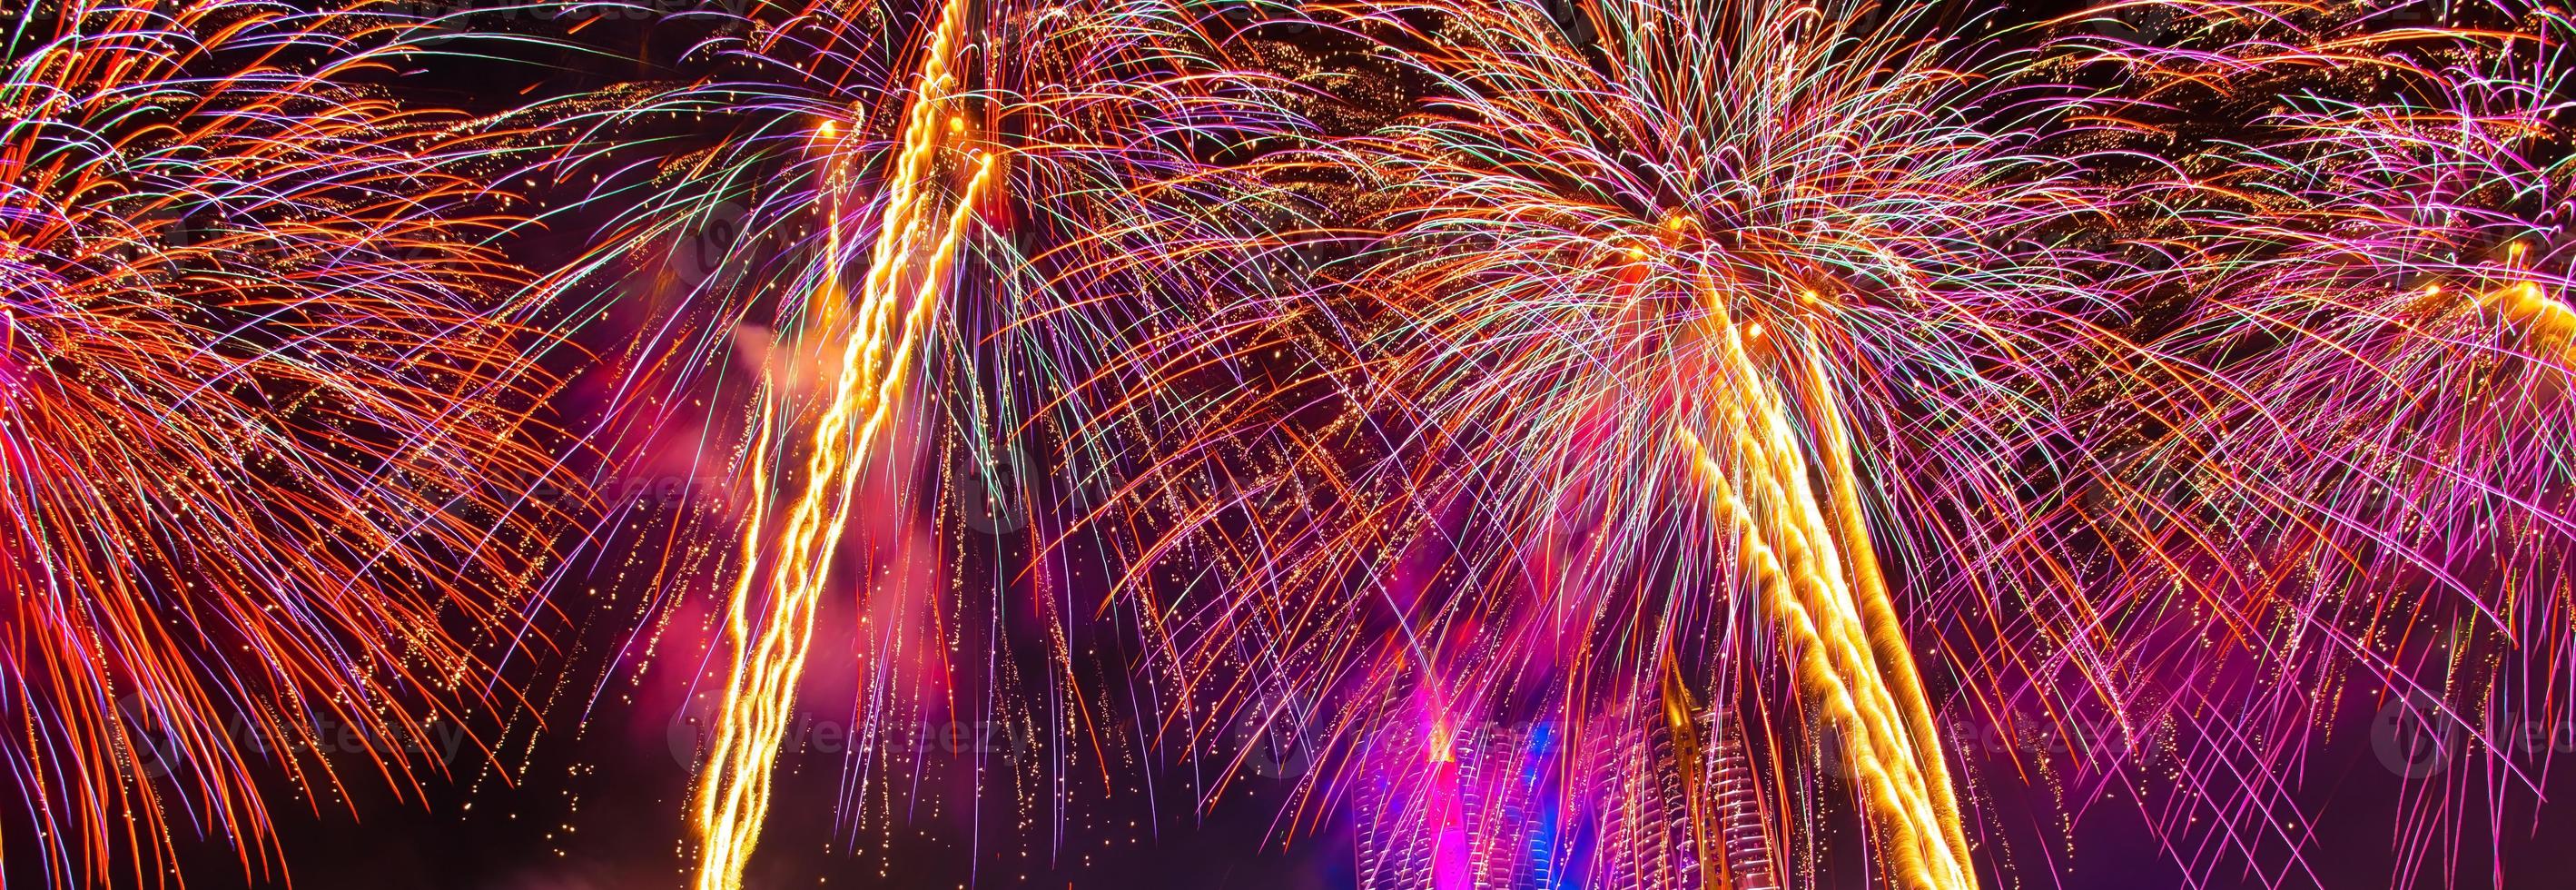 kleurrijk vuurwerk in het vieren van het nieuwe jaar bij de chao phraya-rivier in bangkok, thailand. foto